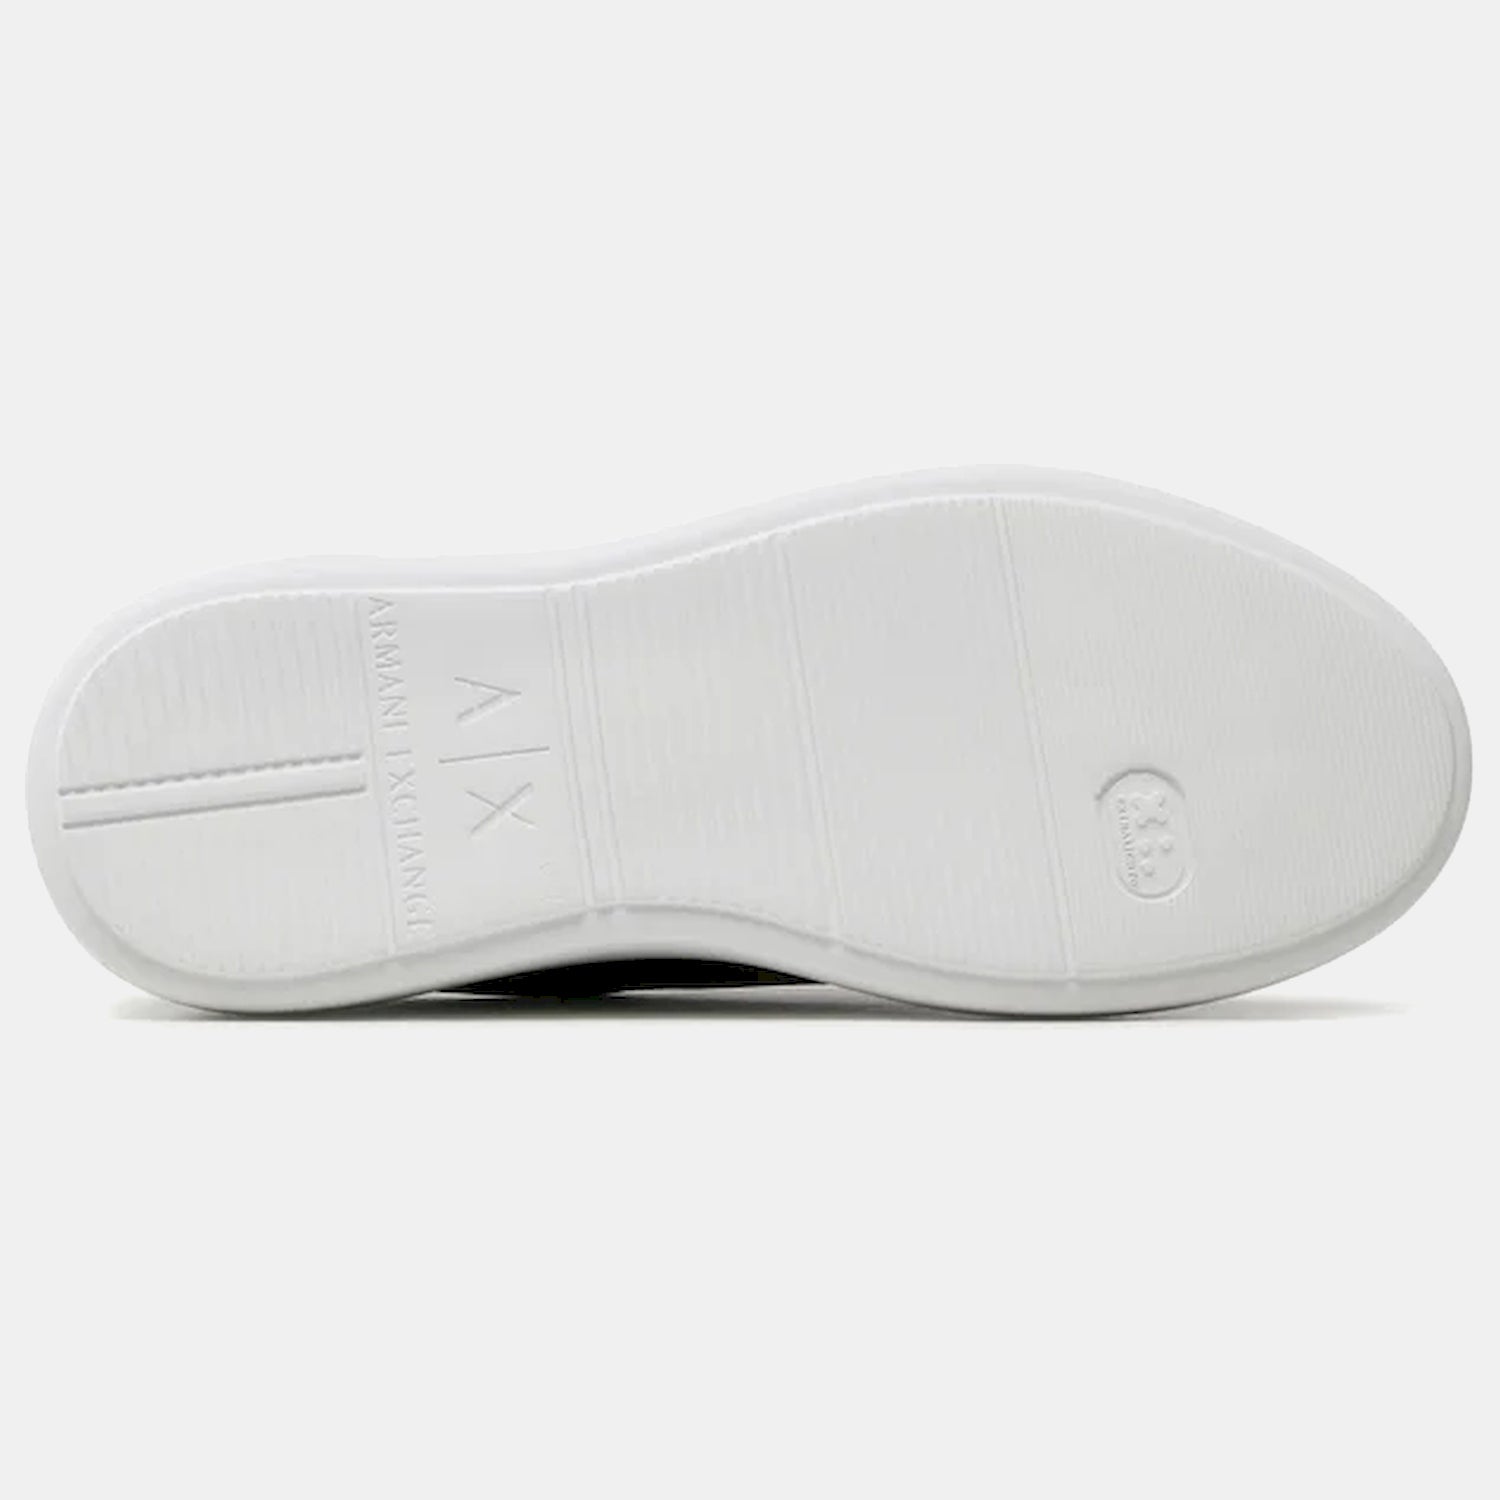 Armani Exchange Sapatilhas Sneakers Shoes Xdx107 Xv584 Blk White Preto Branco_shot3